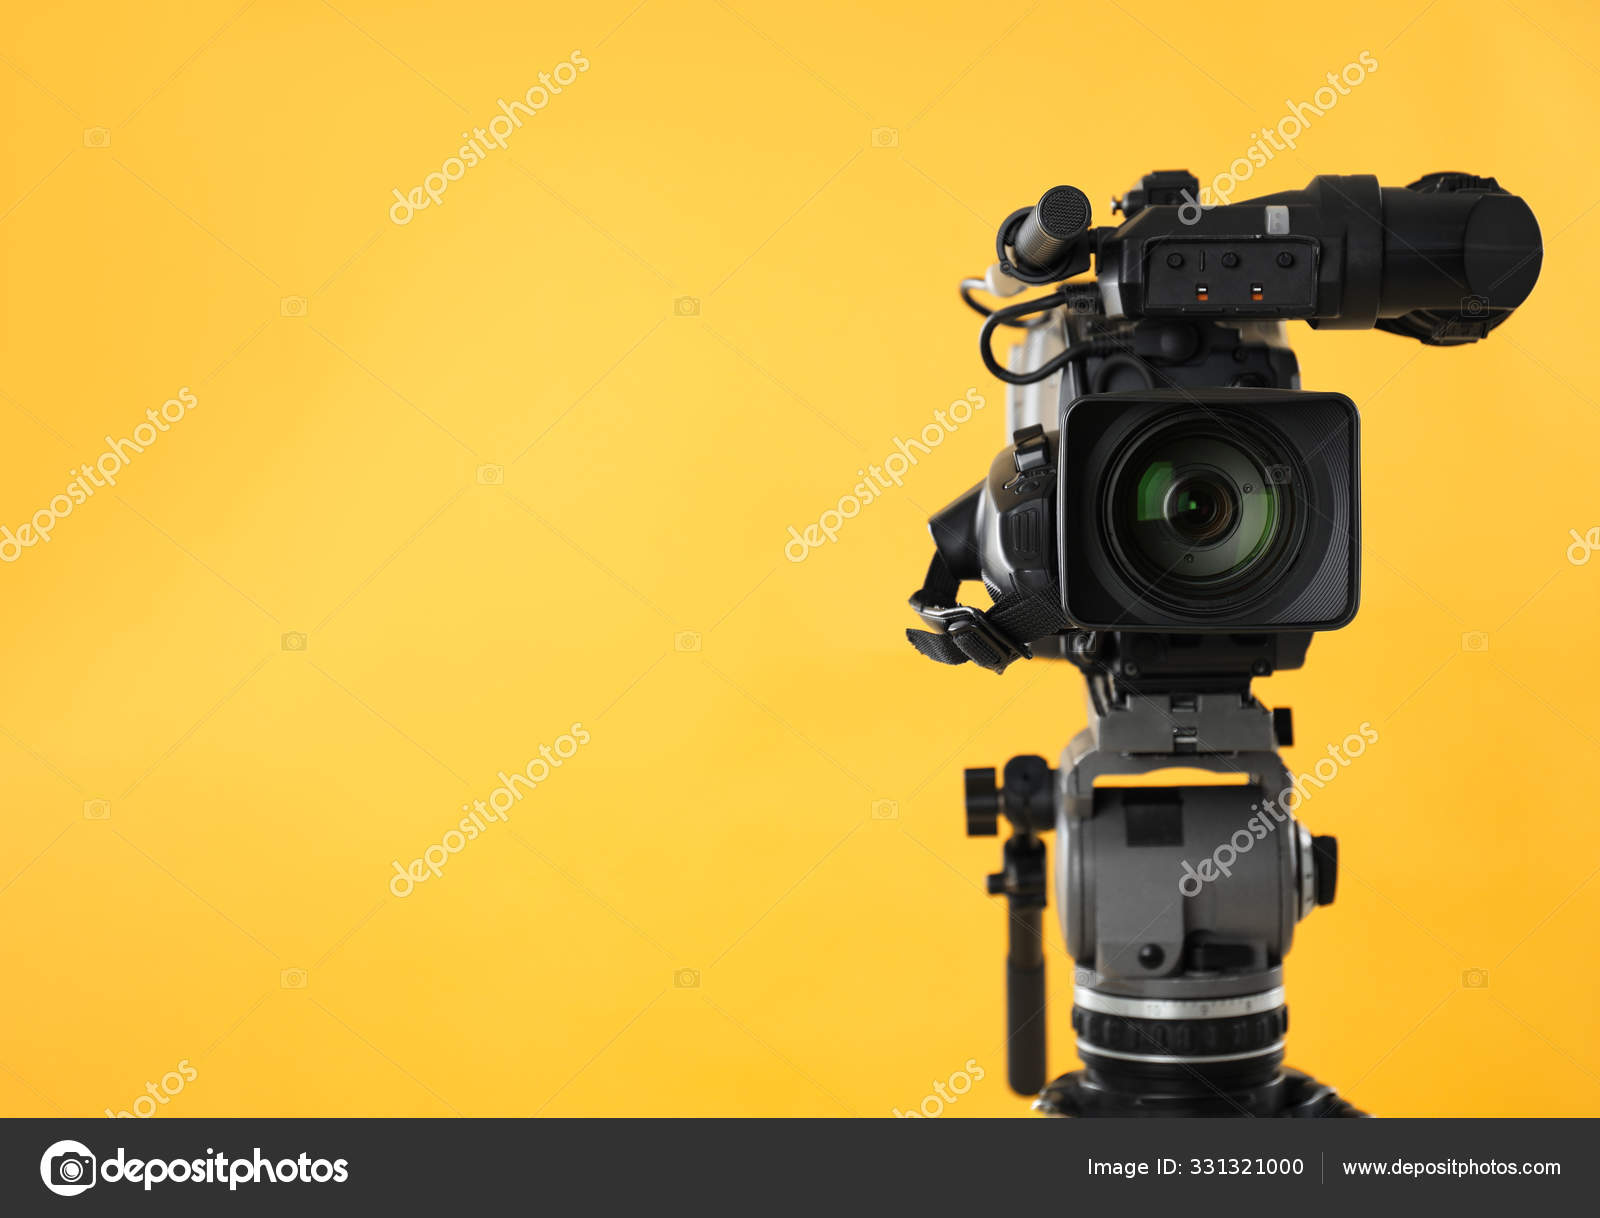 Quay phim chuyên nghiệp trở nên đơn giản hơn bao giờ hết với máy quay video chuyên nghiệp. Hình ảnh liên quan đến sản phẩm này sẽ khiến bạn chú ý và tò mò muốn tìm hiểu thêm.